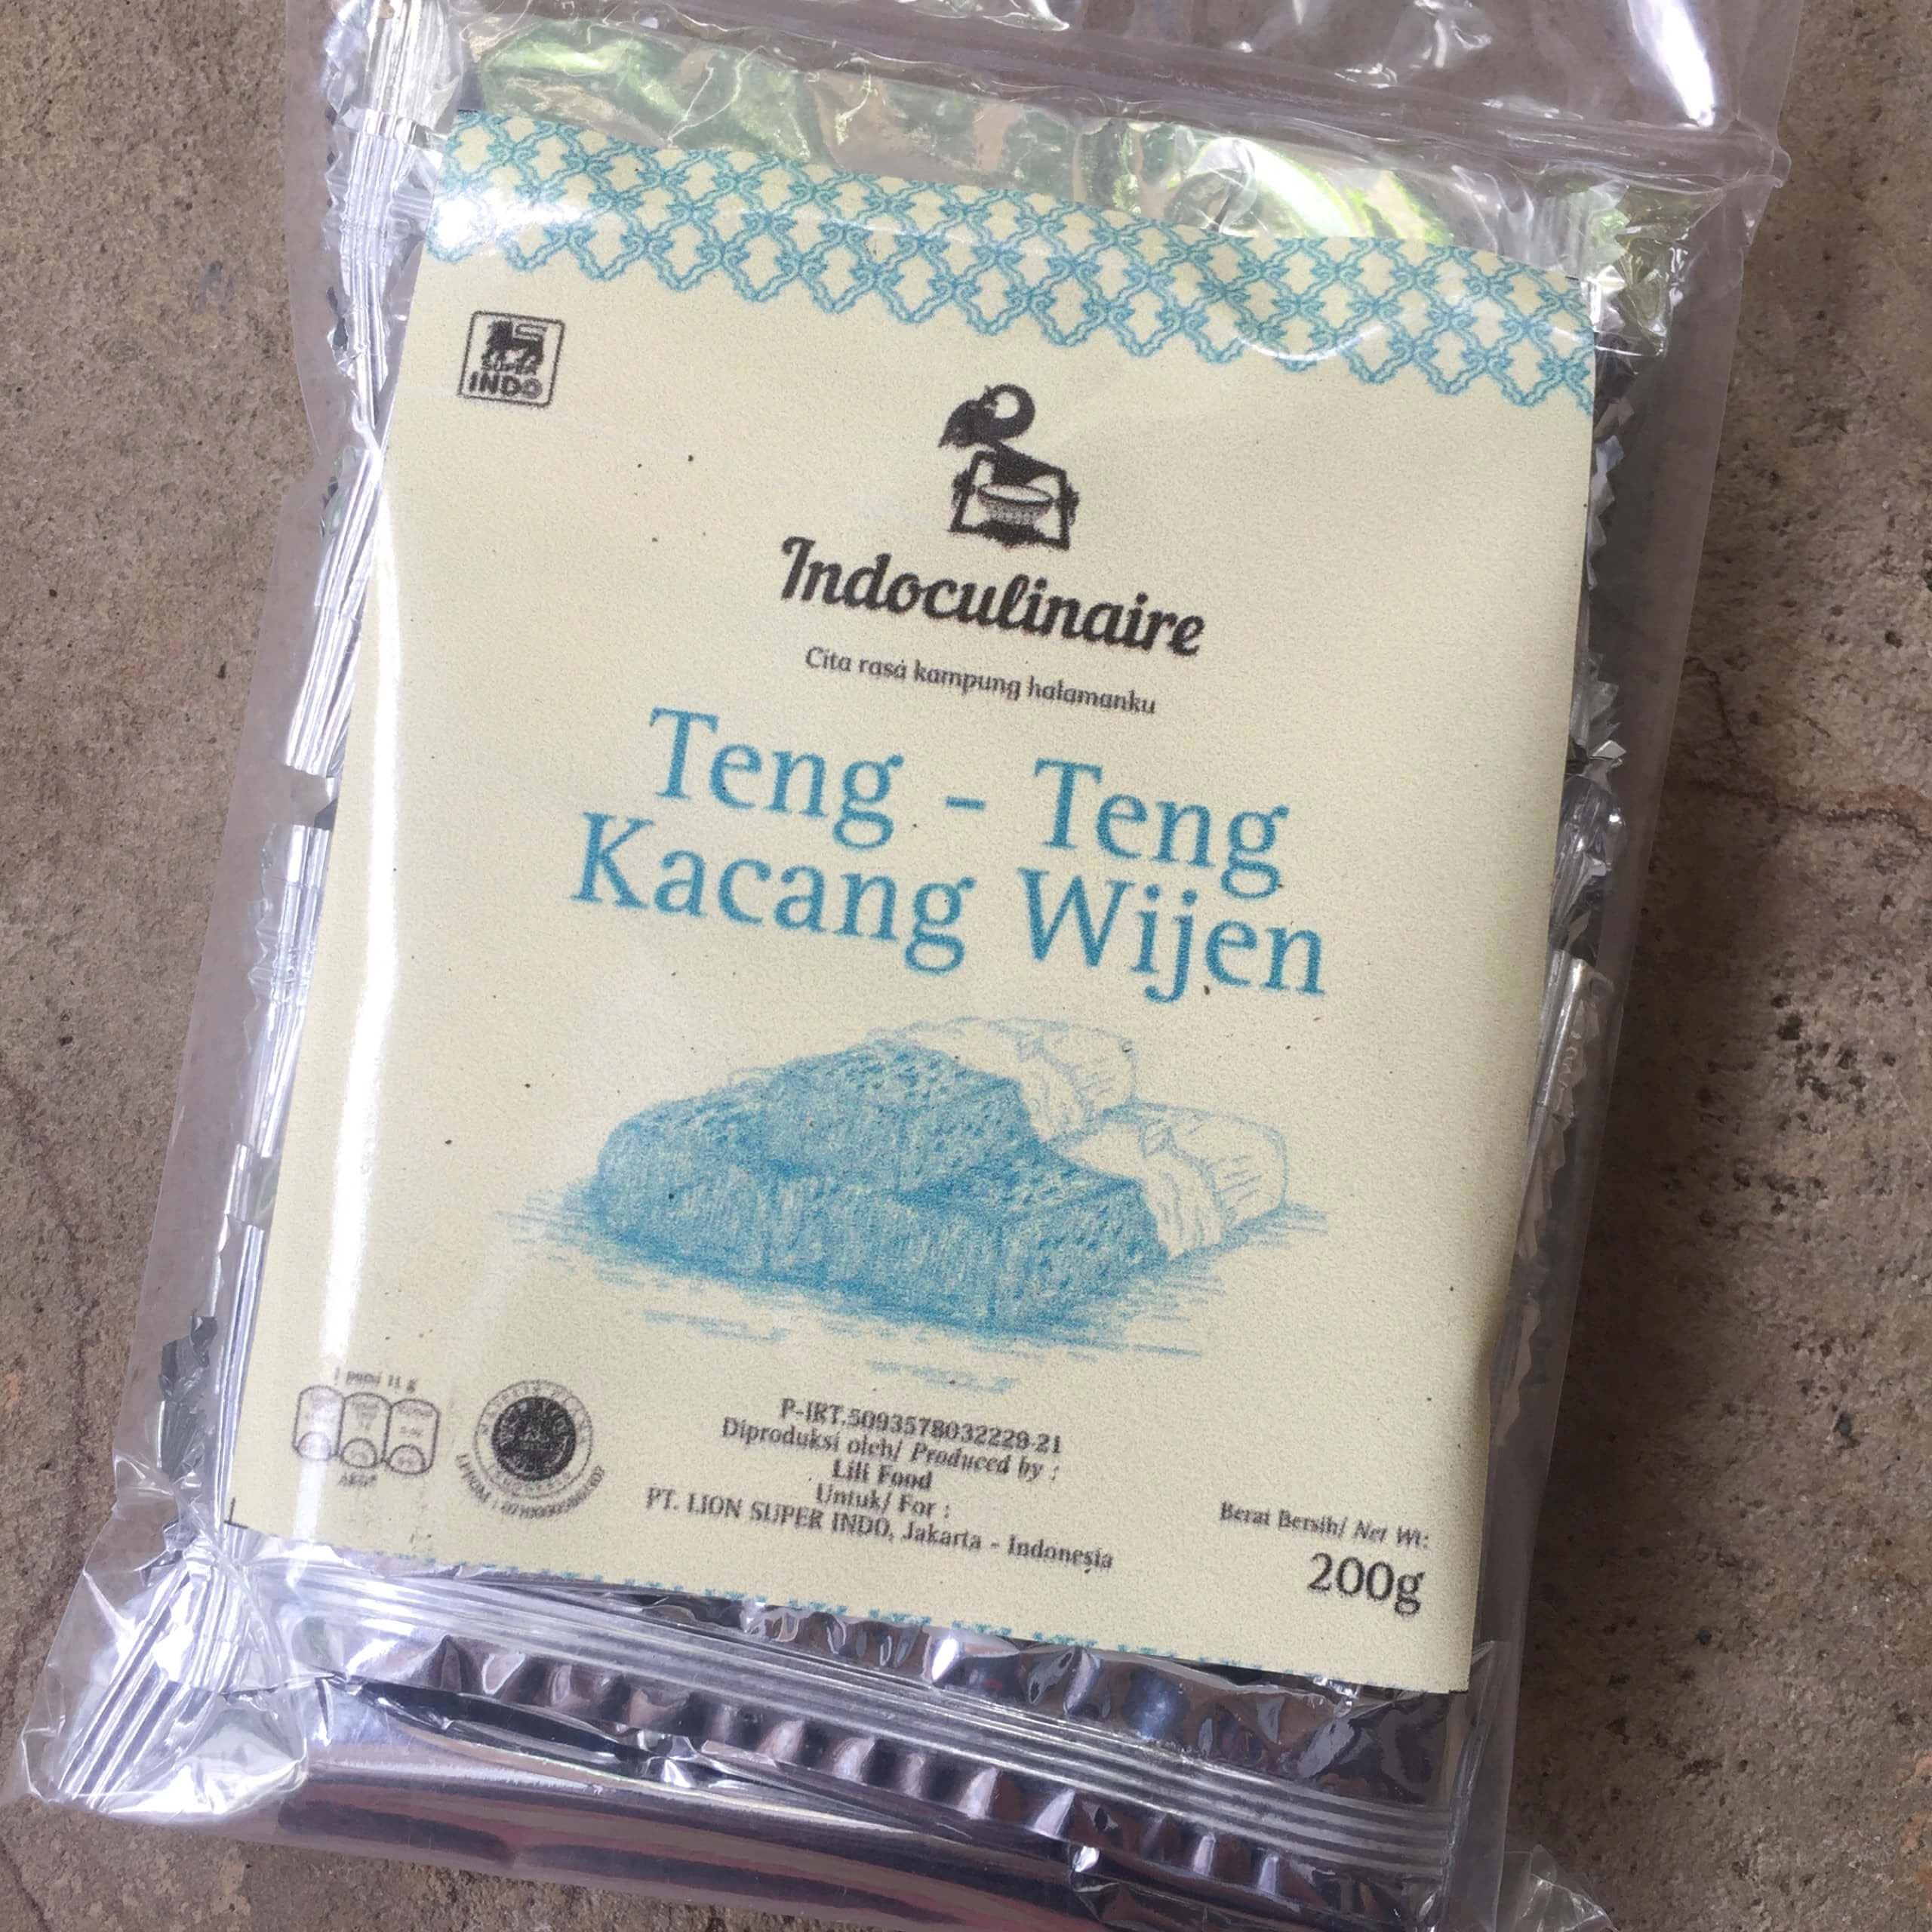 ジョグジャカルタでみつけたお菓子①Teng Teng Kacang Wijen